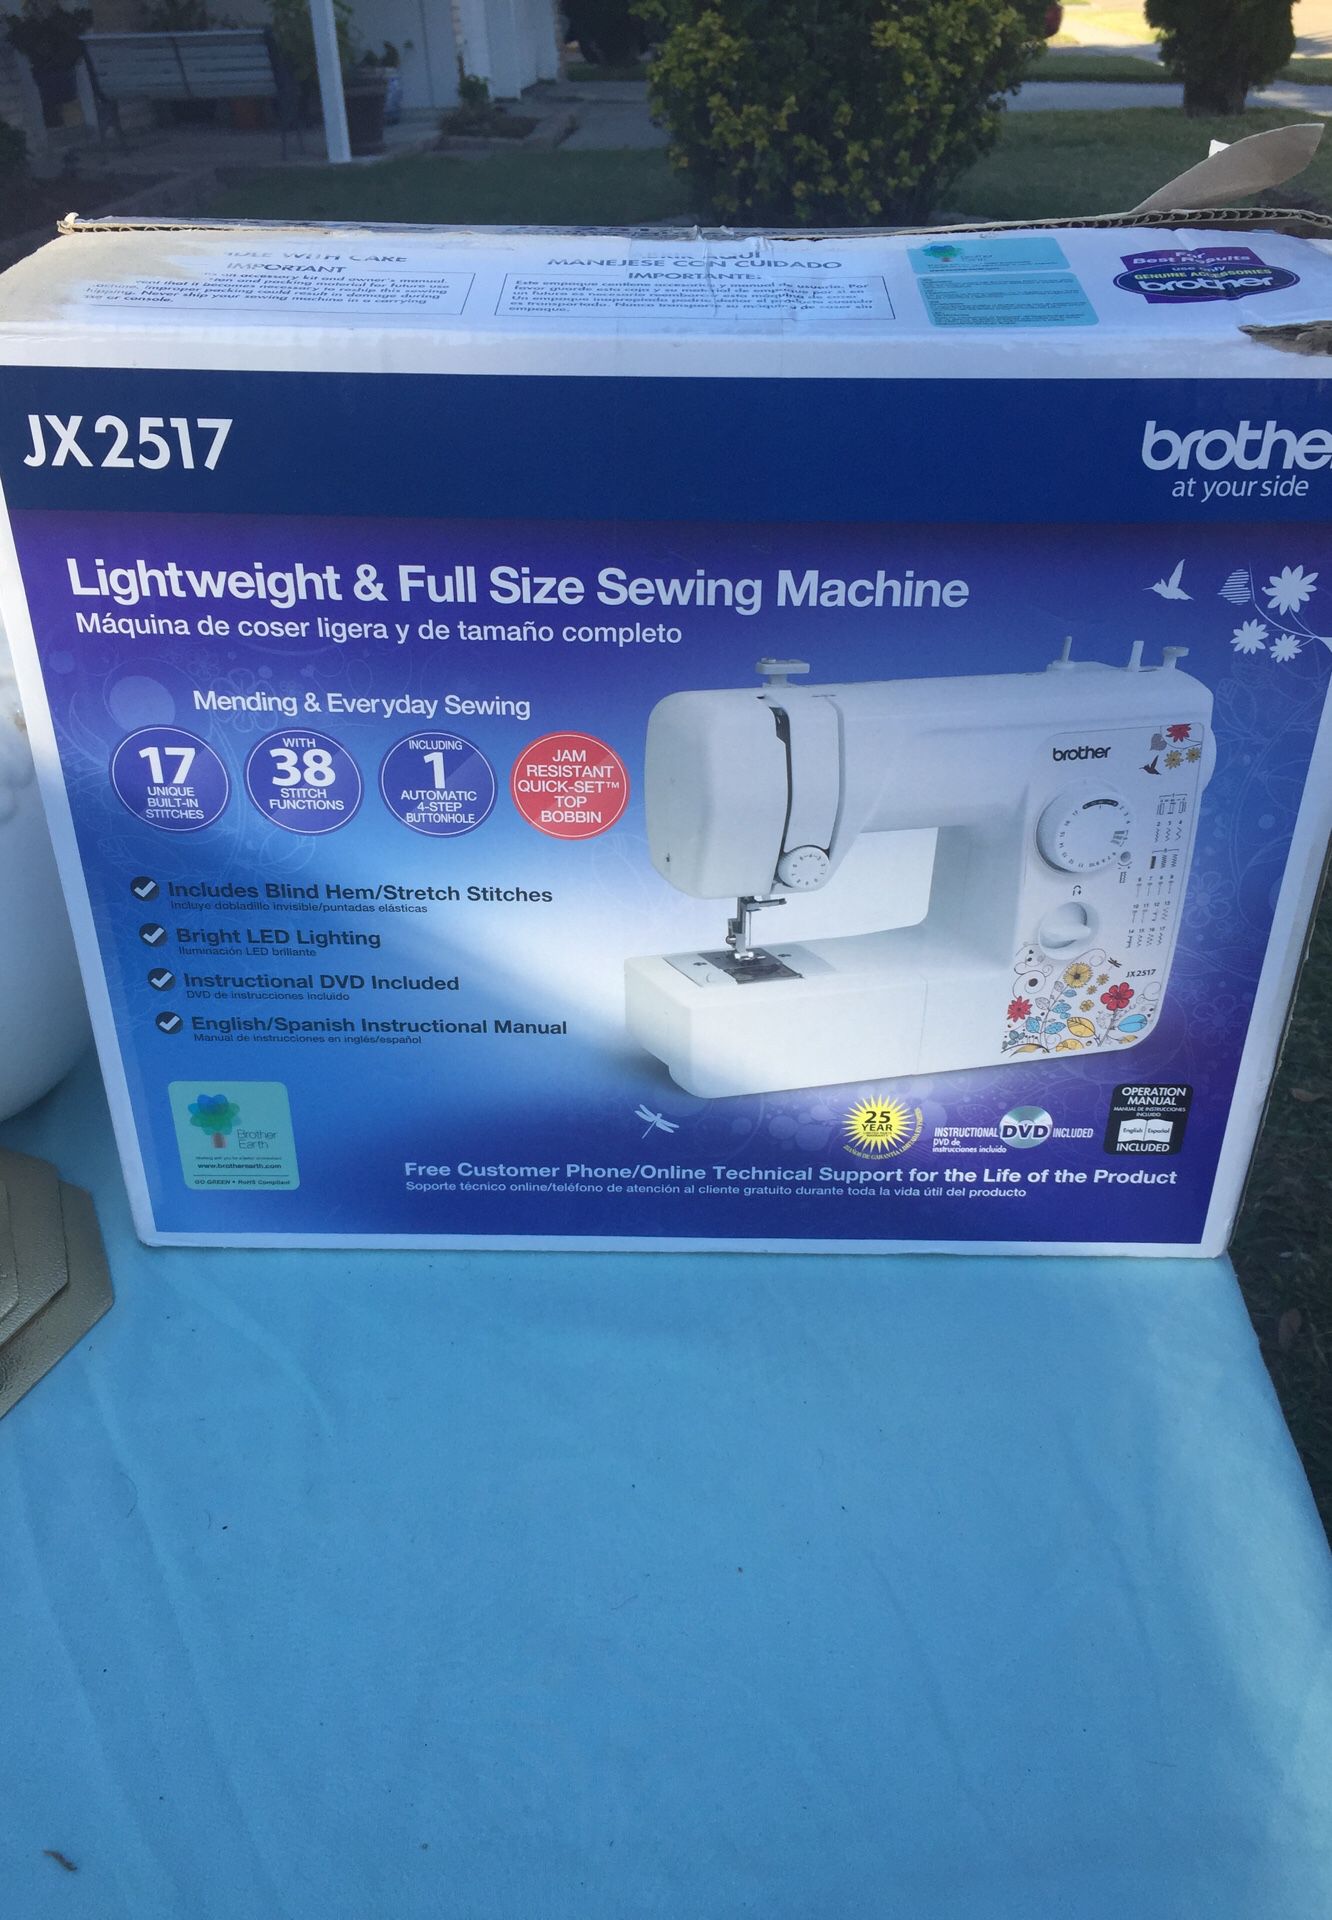 Brand new sewing machine